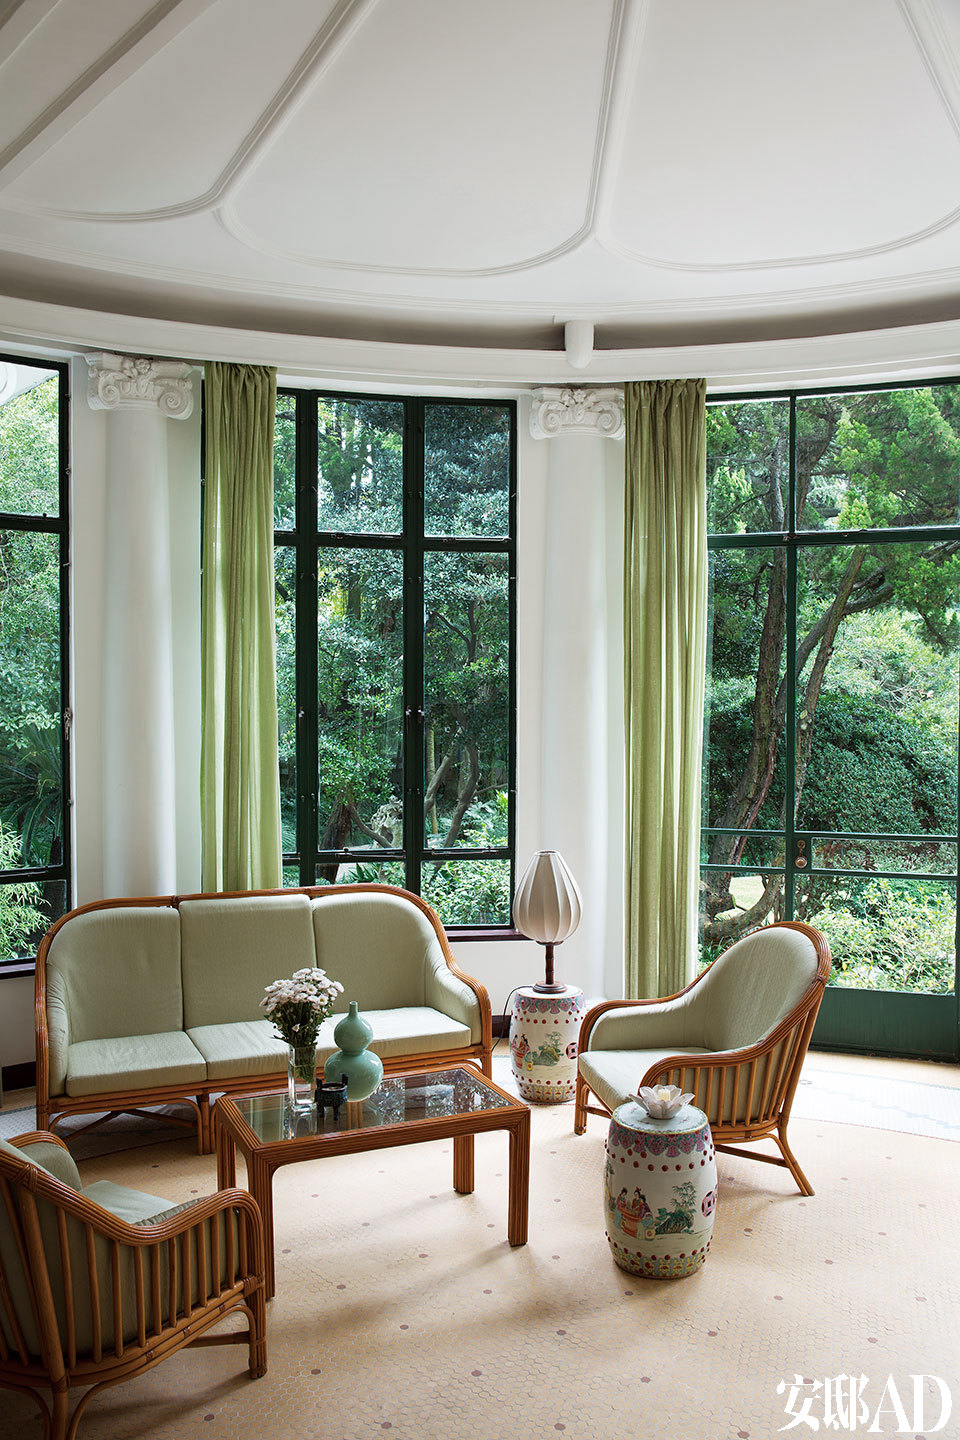 圓形的“冬日花園”面向室外，是早餐、下午茶和聊天的好去處。“ 冬日花園” 里，淡綠色的窗簾和柳條家具的搭配，讓人感覺已經置身于室外。